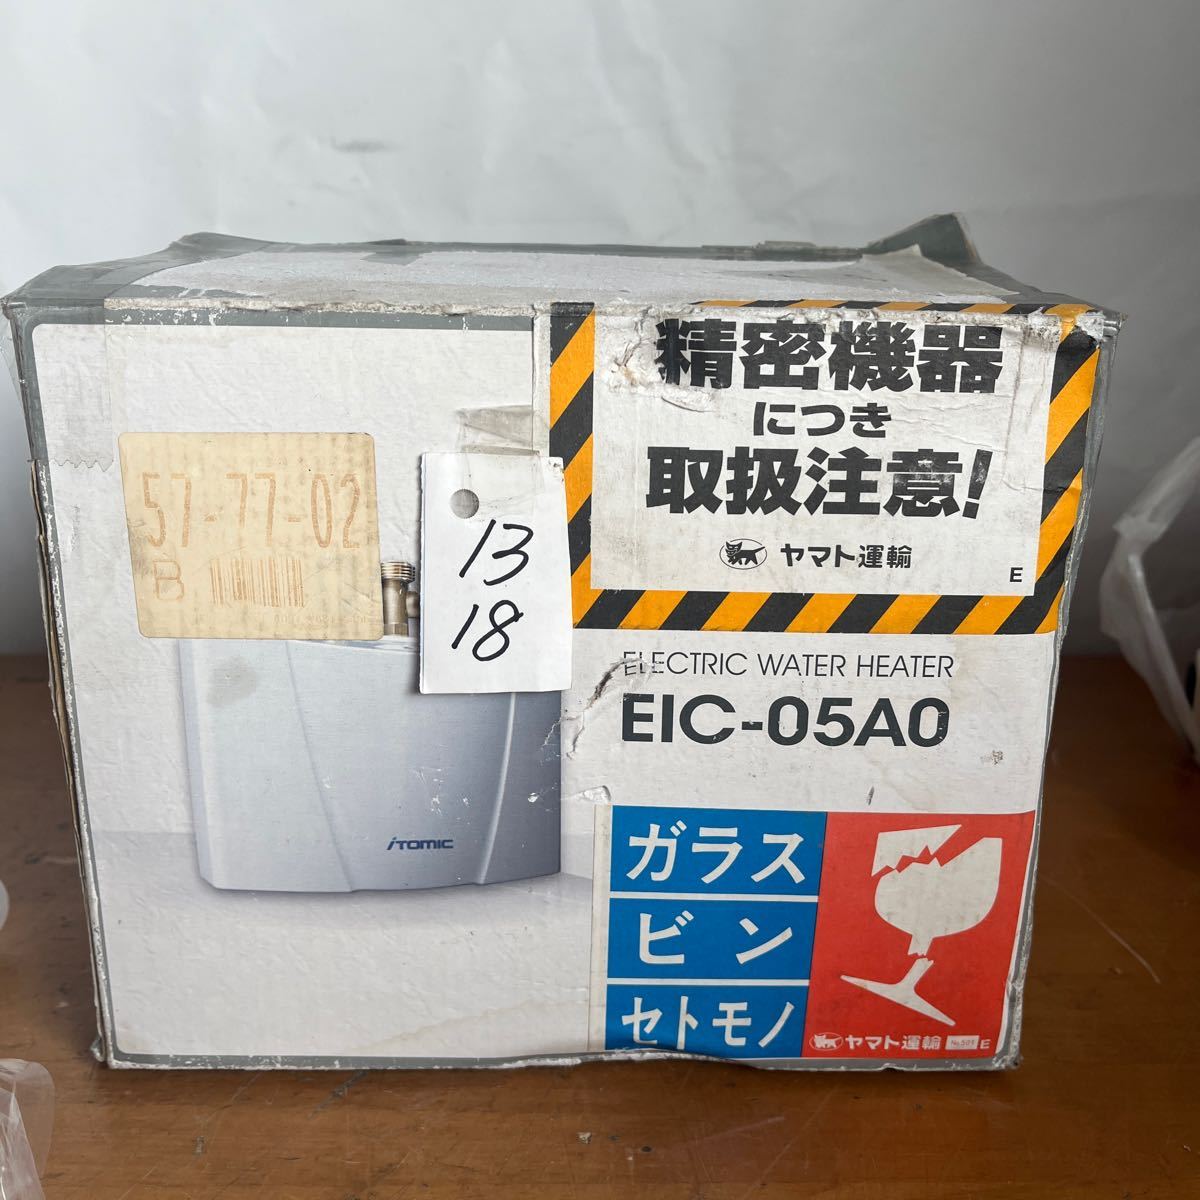 電気瞬間湯沸器 EIC-05A0 / 単相200V/ iTomic 電気温水器